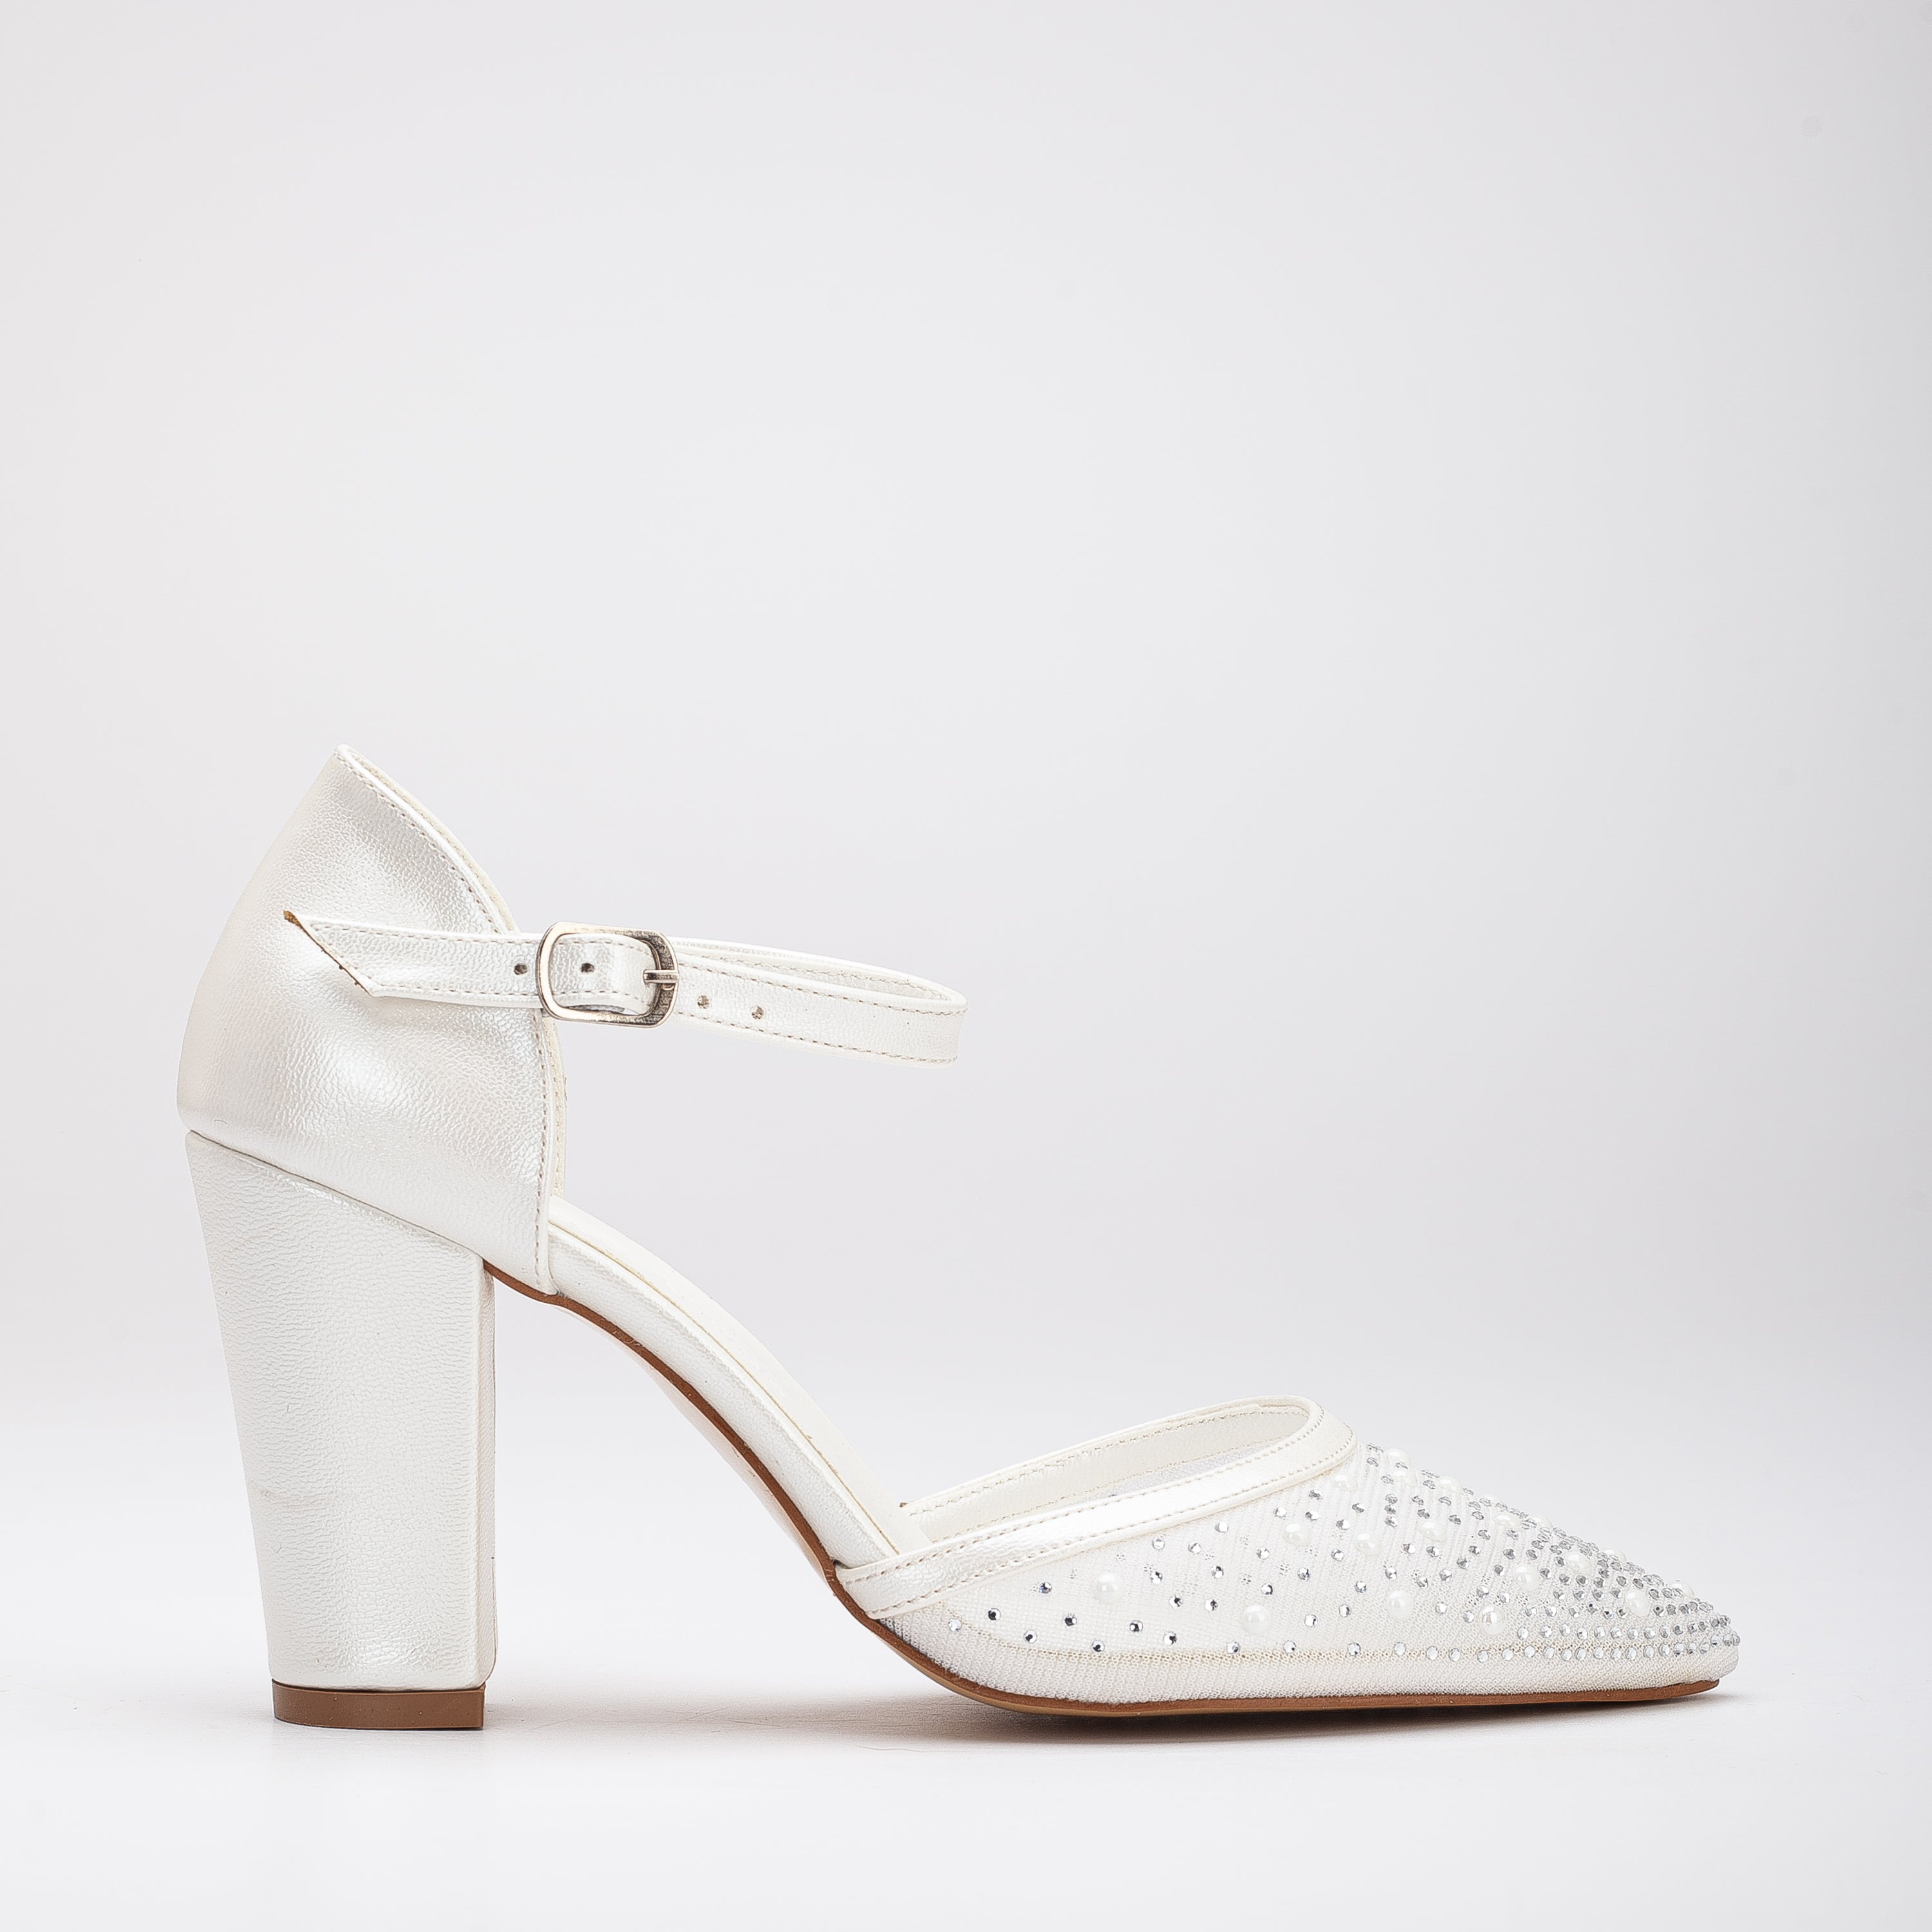 Aveline - Lace Wedding Shoes